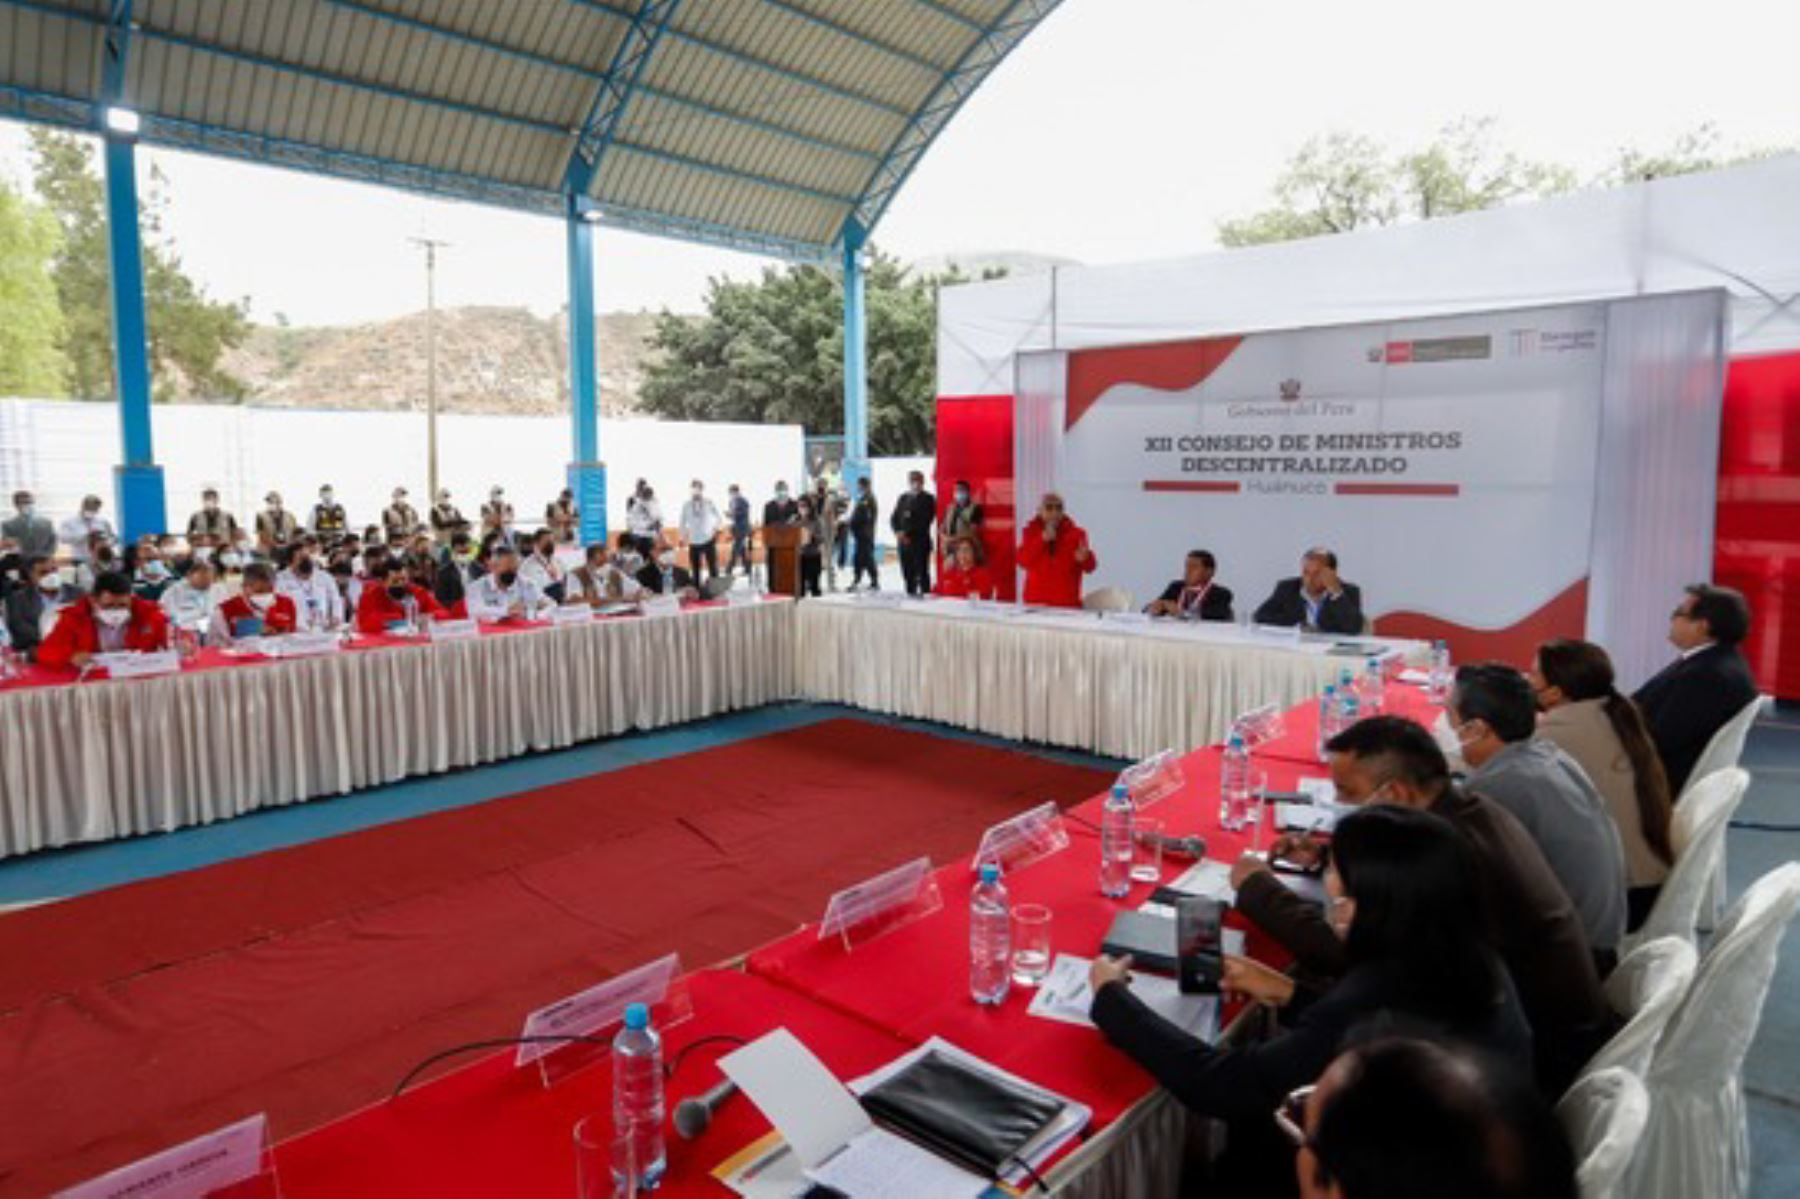 El ministro de Cultura, Alejandro Salas Zegarra, cumplió agenda de trabajo en Huánuco, además de participar en el XII Consejo de Ministros Descentralizado.